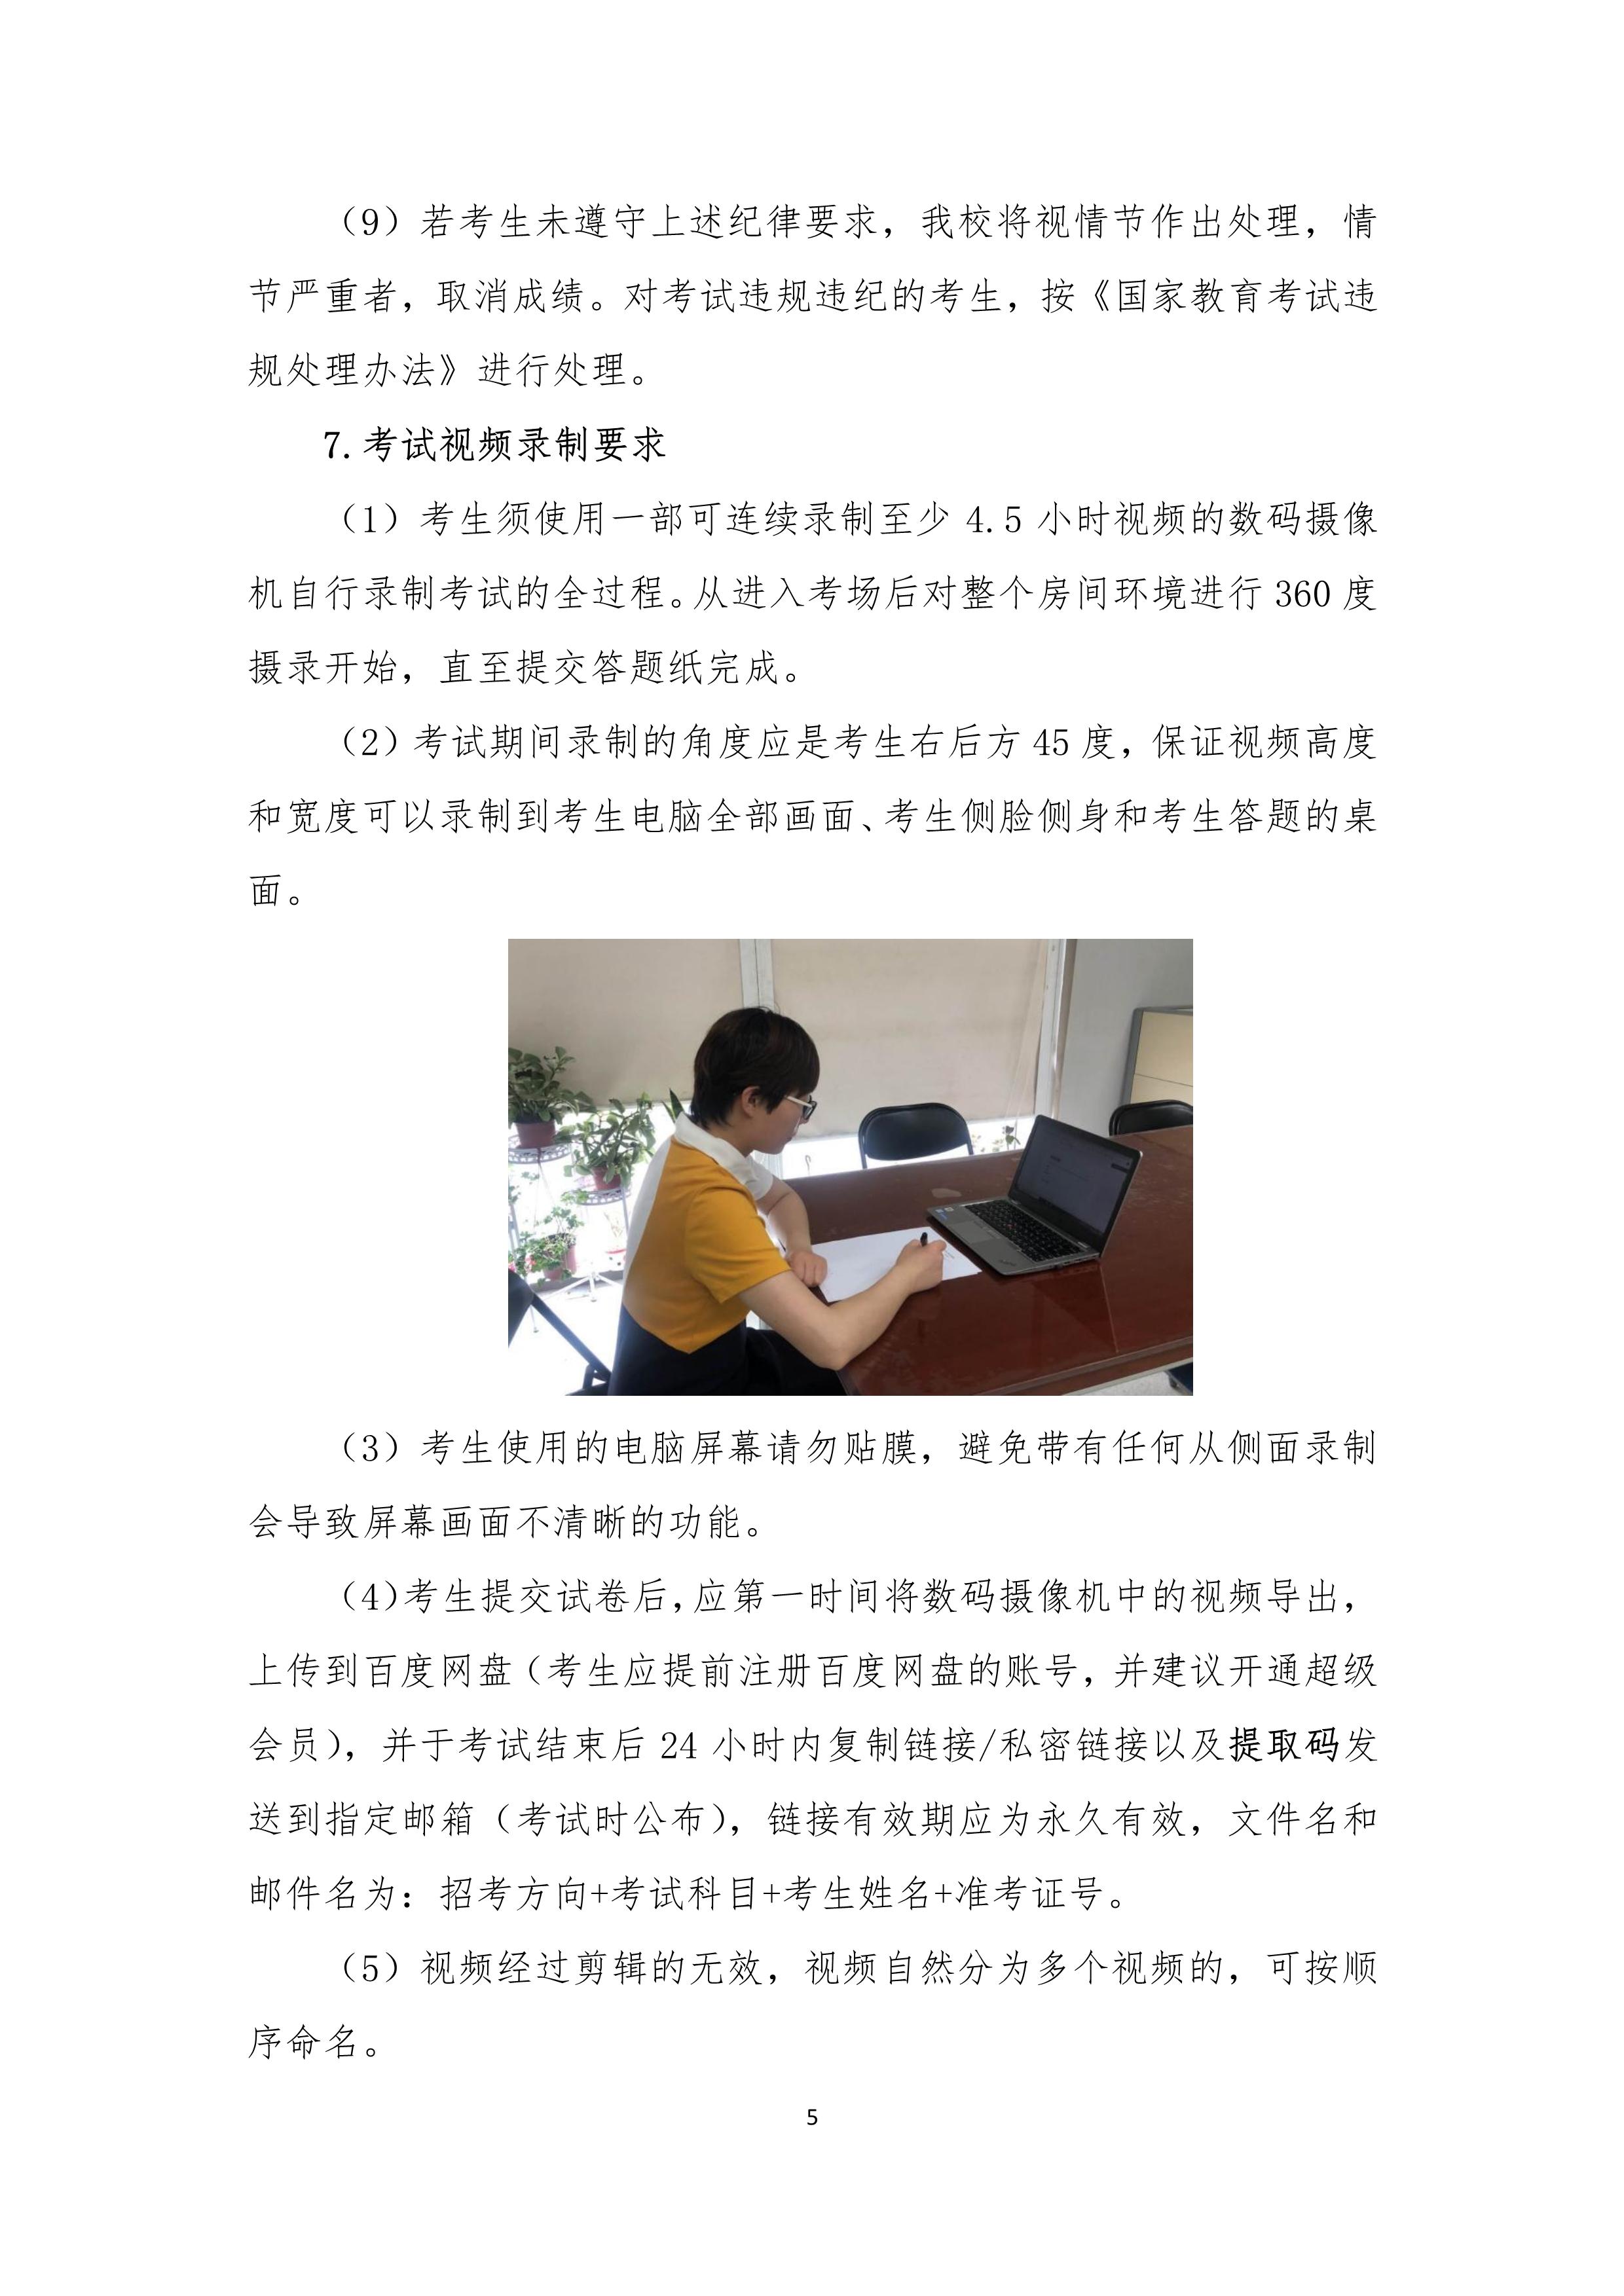 2022年本科招生线上考试方案【钢琴调律与修复招考方向】_5.jpg